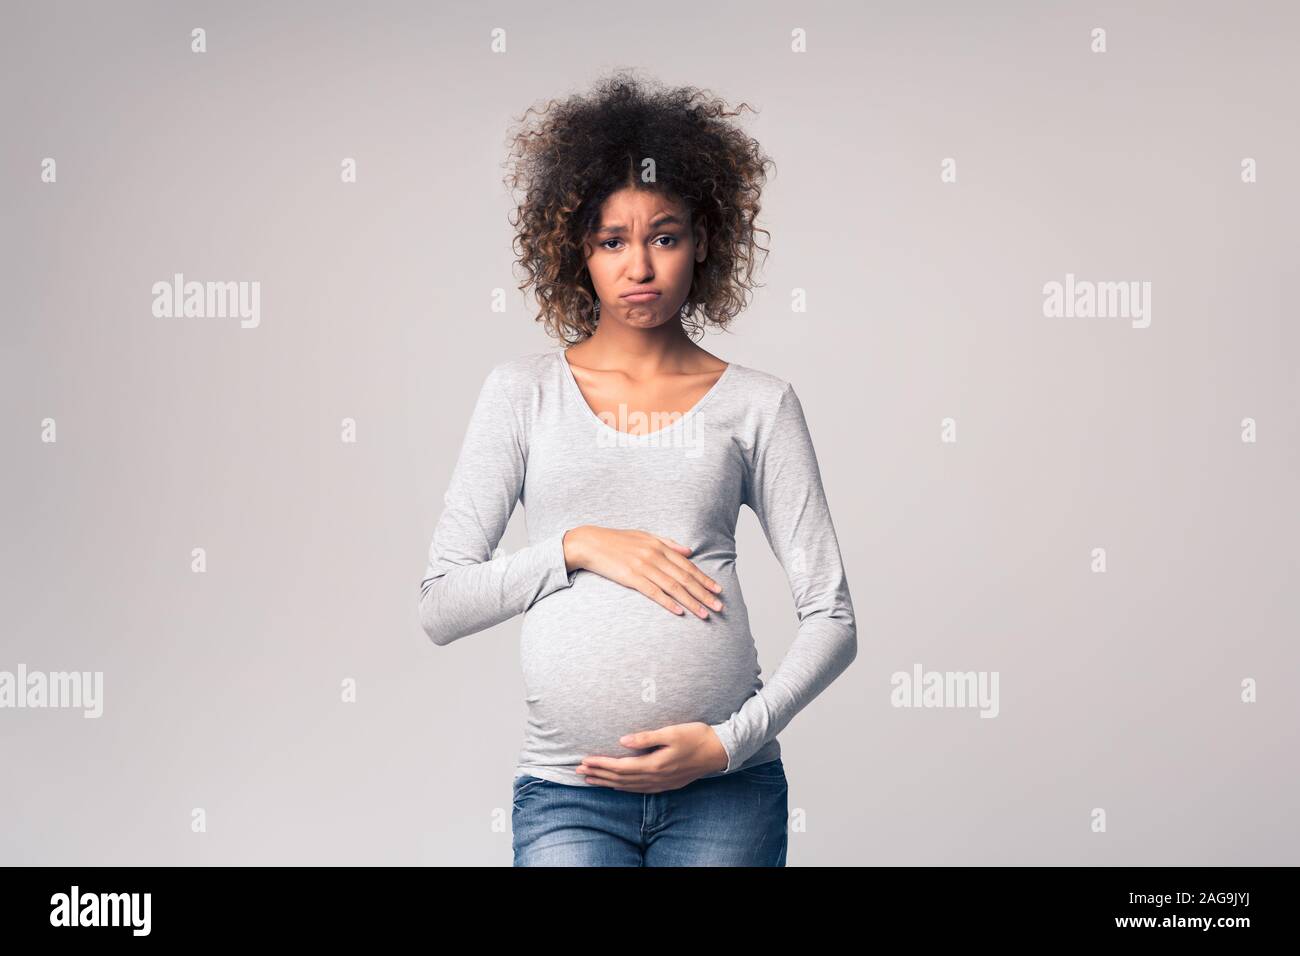 Les hormones et les changements d'humeur. Ventre de femme enceinte triste Banque D'Images